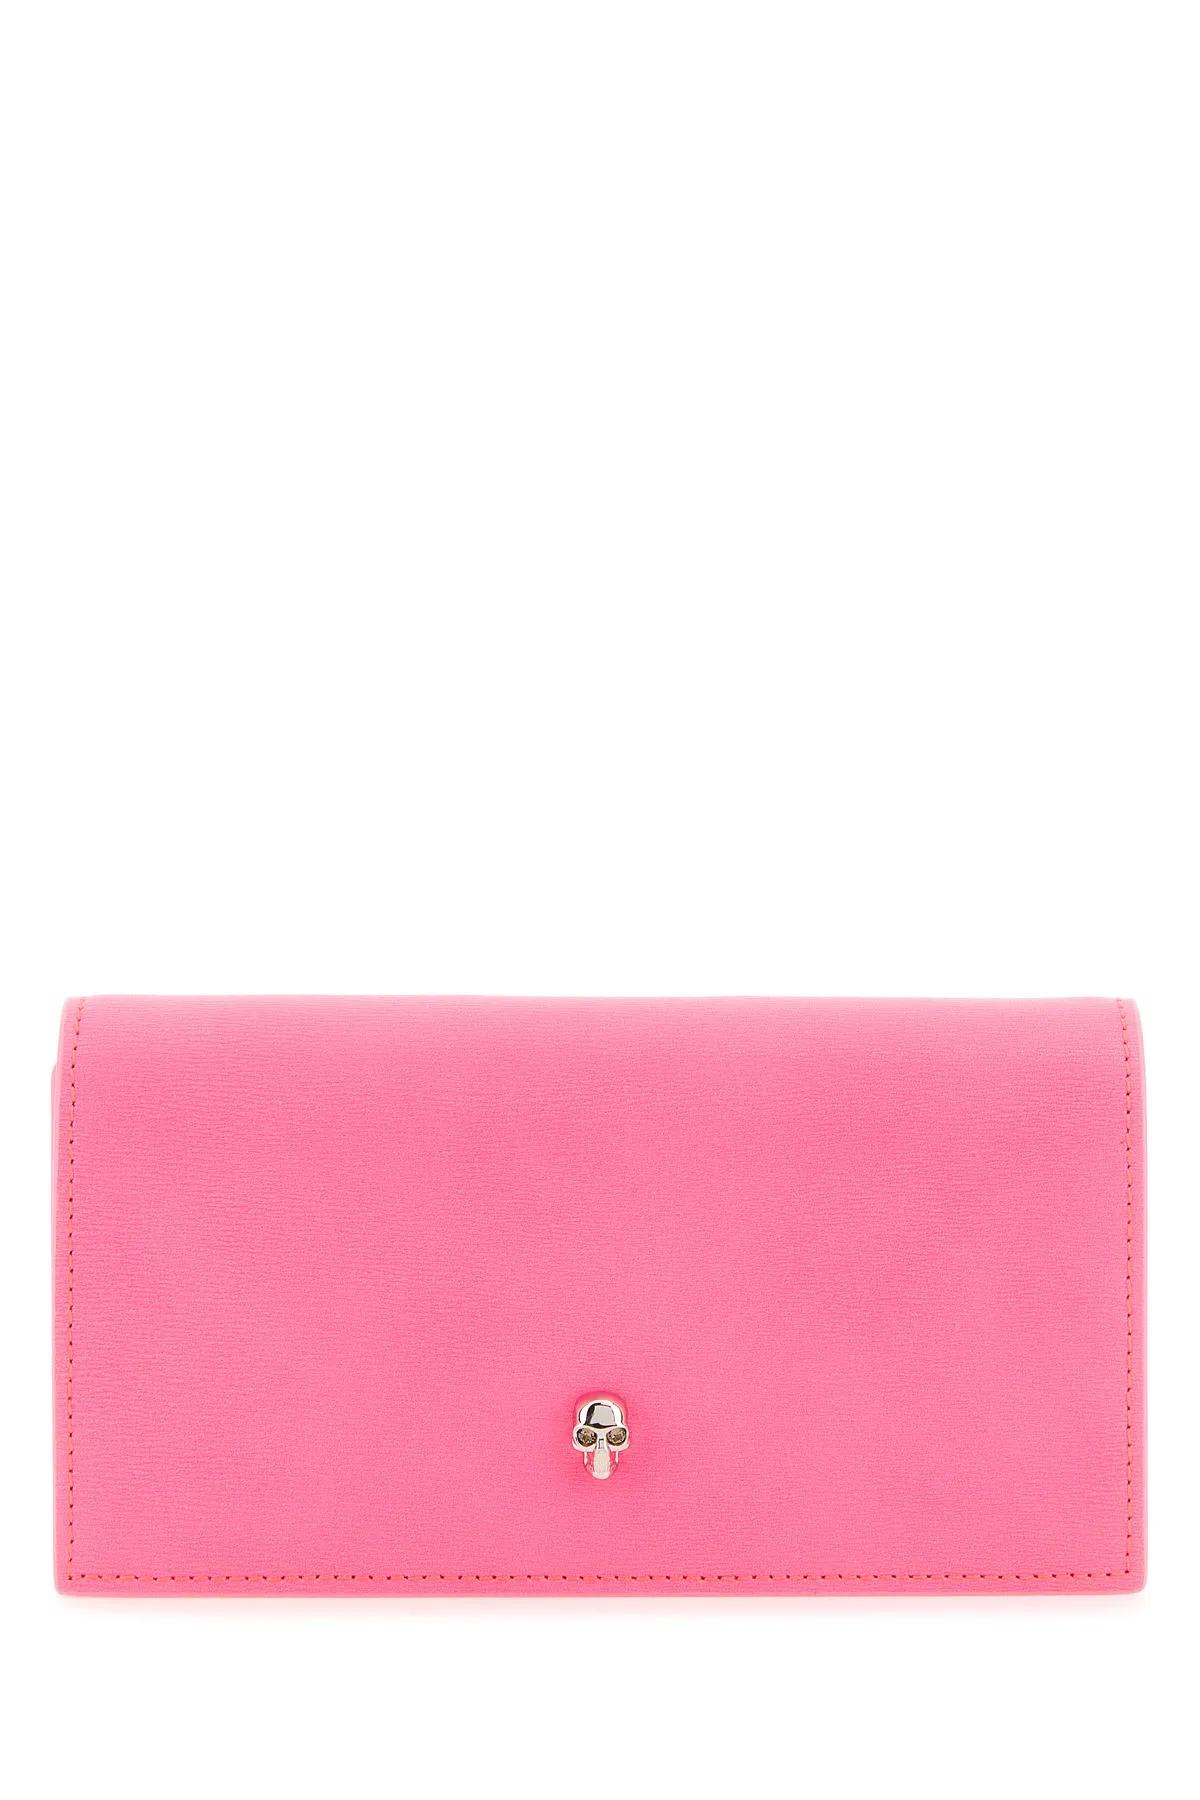 Alexander Mcqueen Fluo Pink Leather Wallet